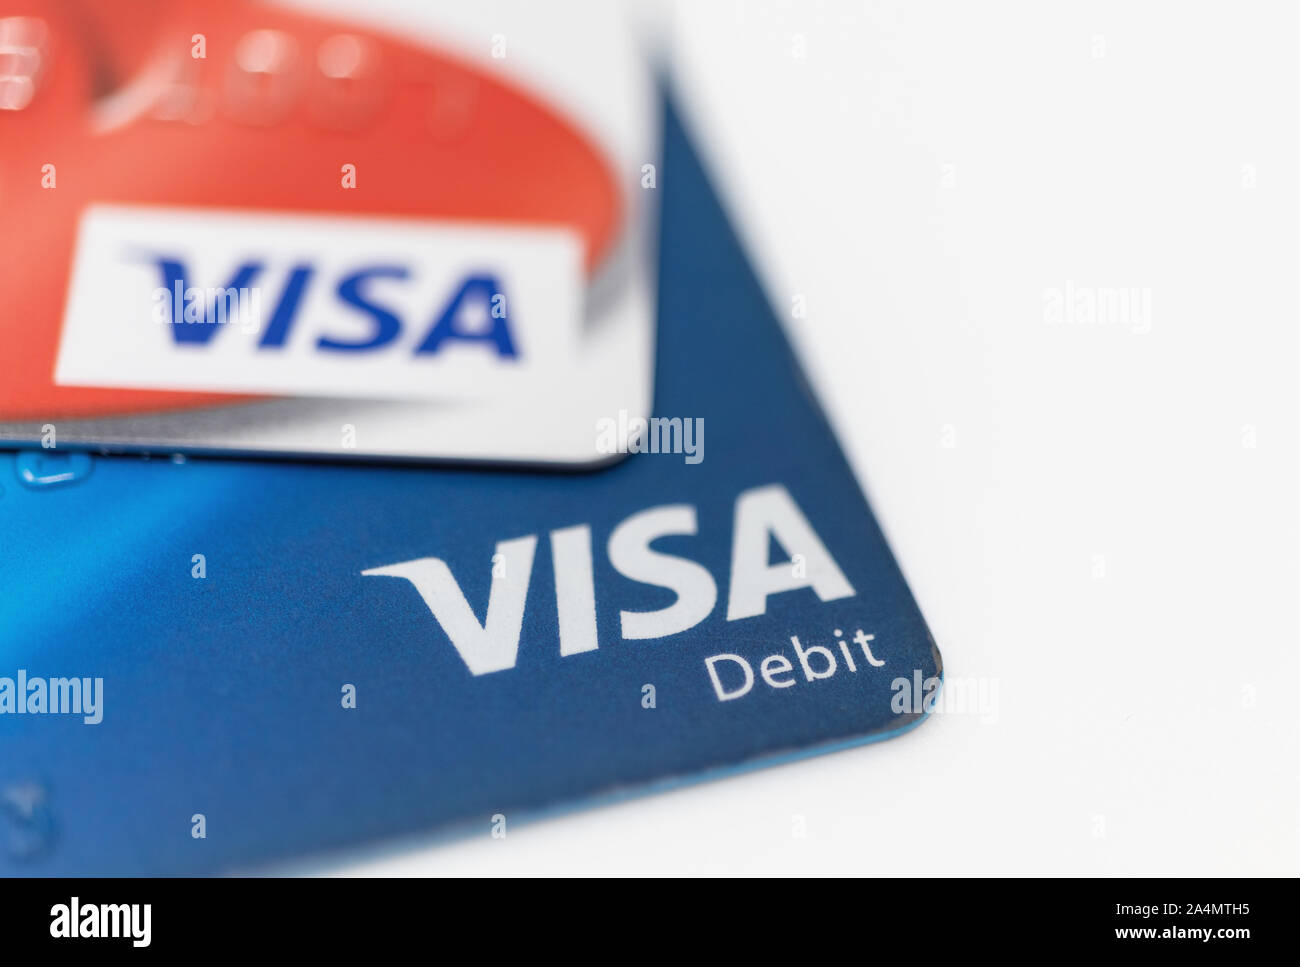 London / UK - 9 octobre 2019 - logo Visa sur les cartes bancaires, closeup macro-vision avec une faible profondeur de champ Banque D'Images